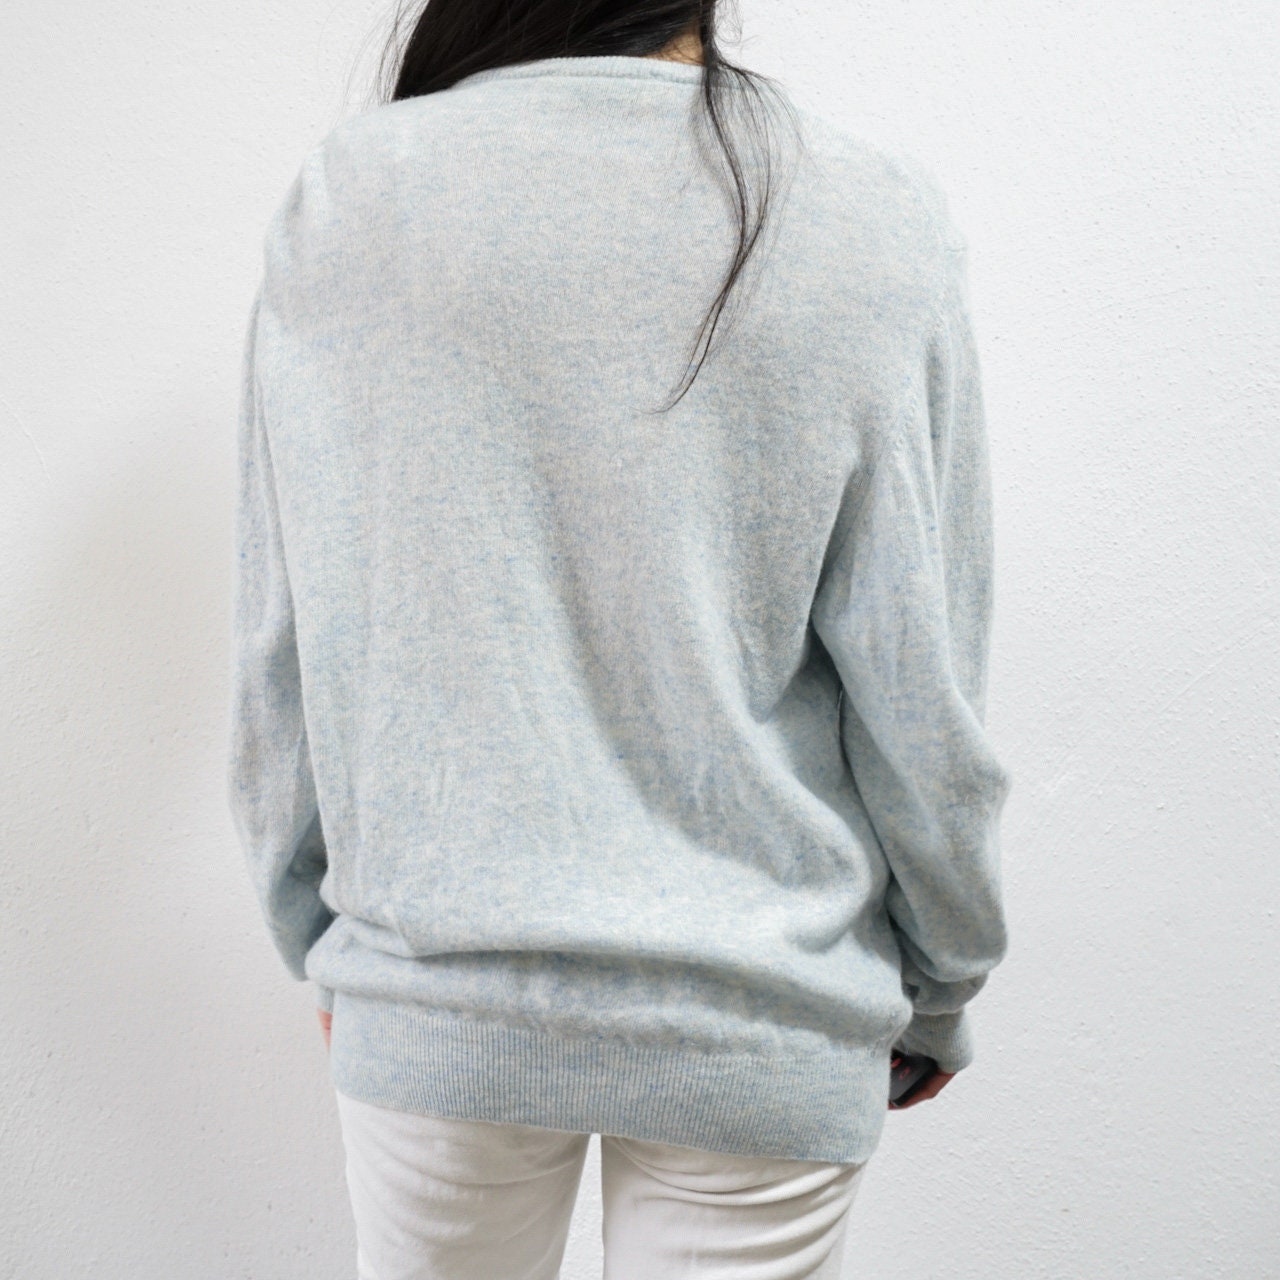 Vintage light blue wool Pullover size M-L v-neck sweater 90s jumper vintage sweater